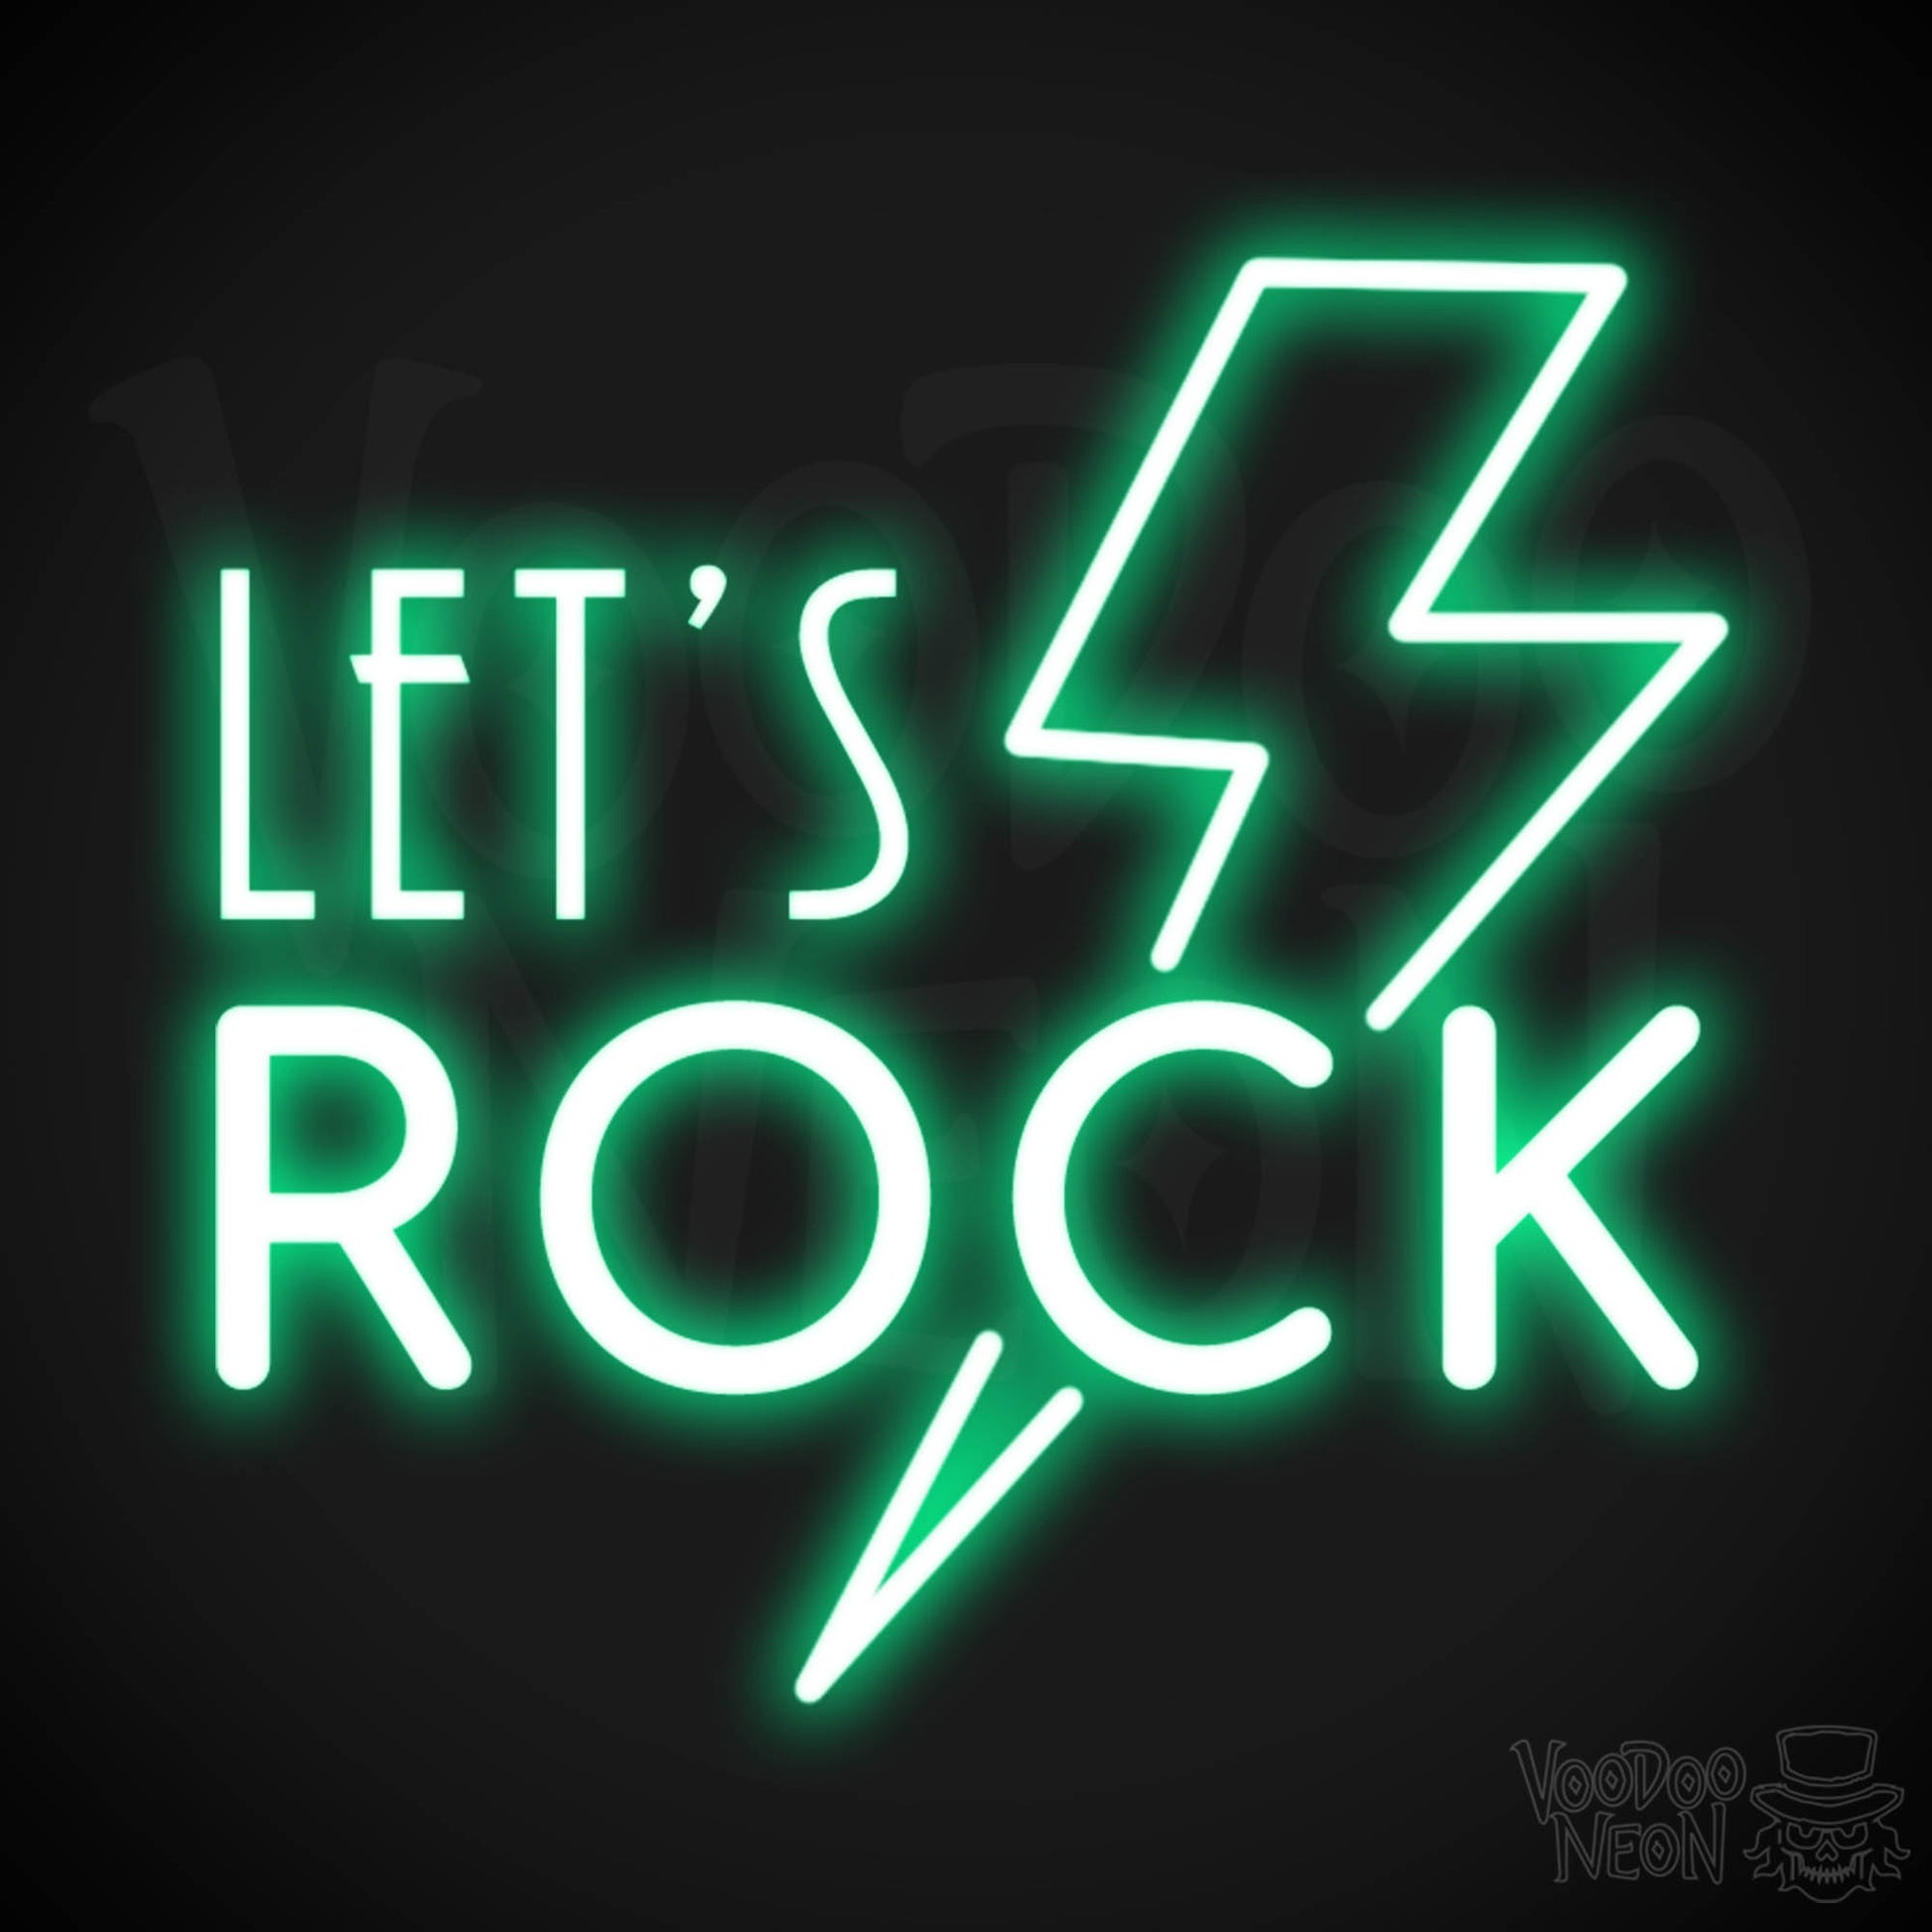 Let's Rock Neon Sign - Let's Rock LED Light Up Sign - Color Green